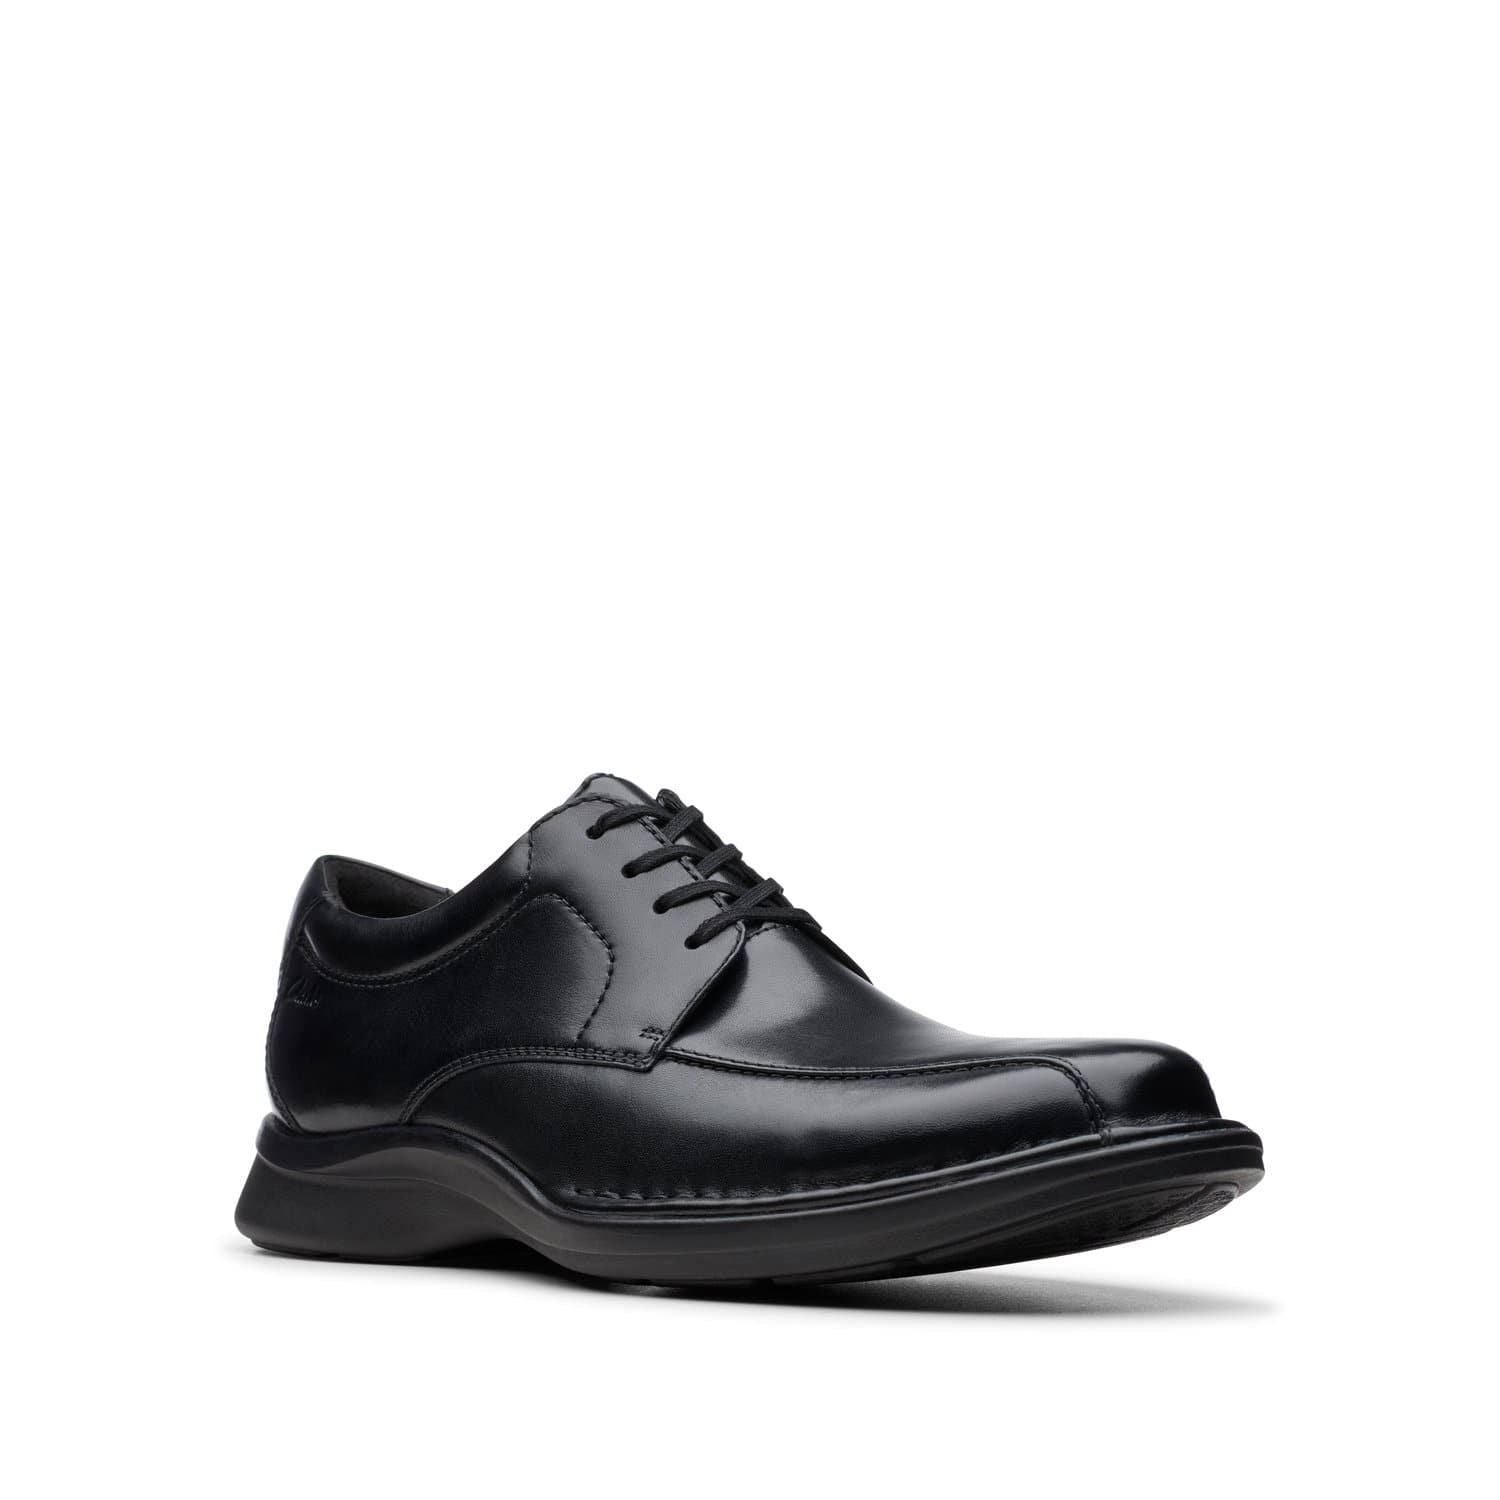 Clarks-Kempton-Run-Men's-Shoes-Black-Leather-26145477